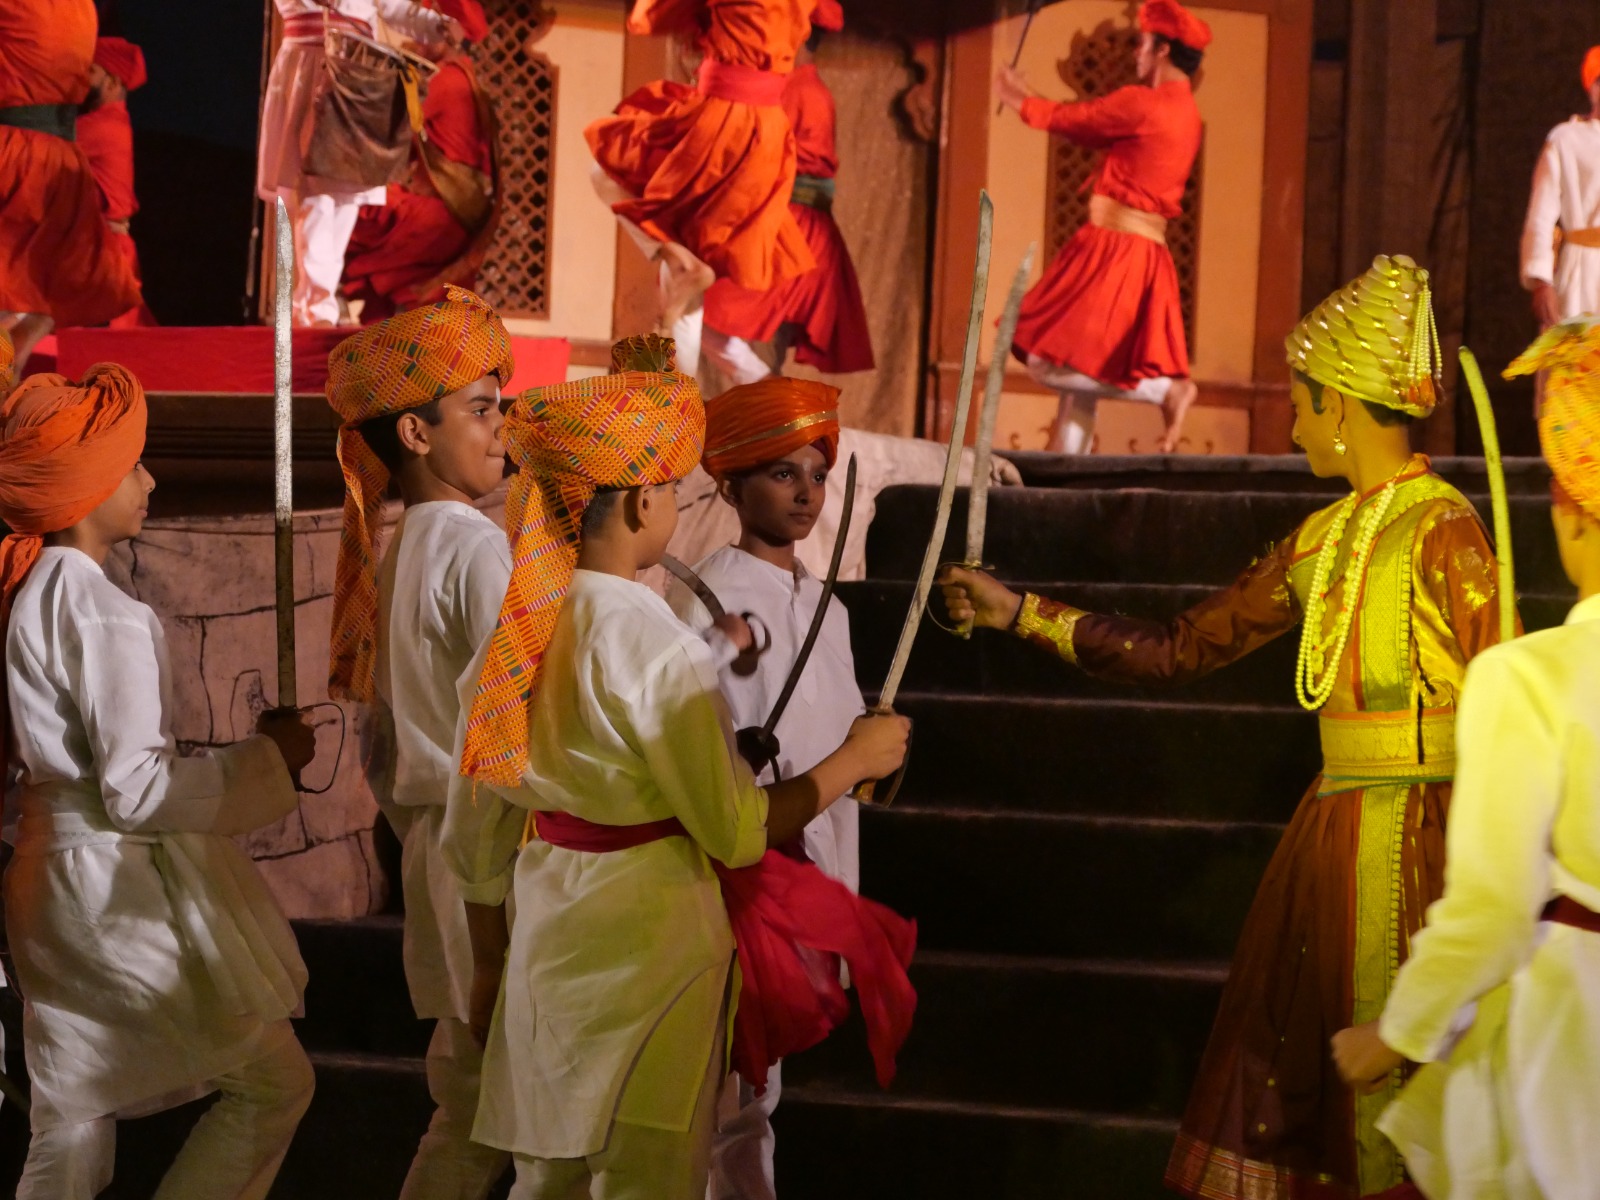 नाटक में महाराष्ट्र के संघर्ष, मराठाओं का पठानों से युद्ध, जीजाबाई का त्याग और छत्रपति शिवाजी का युद्ध कौशल बताया गया